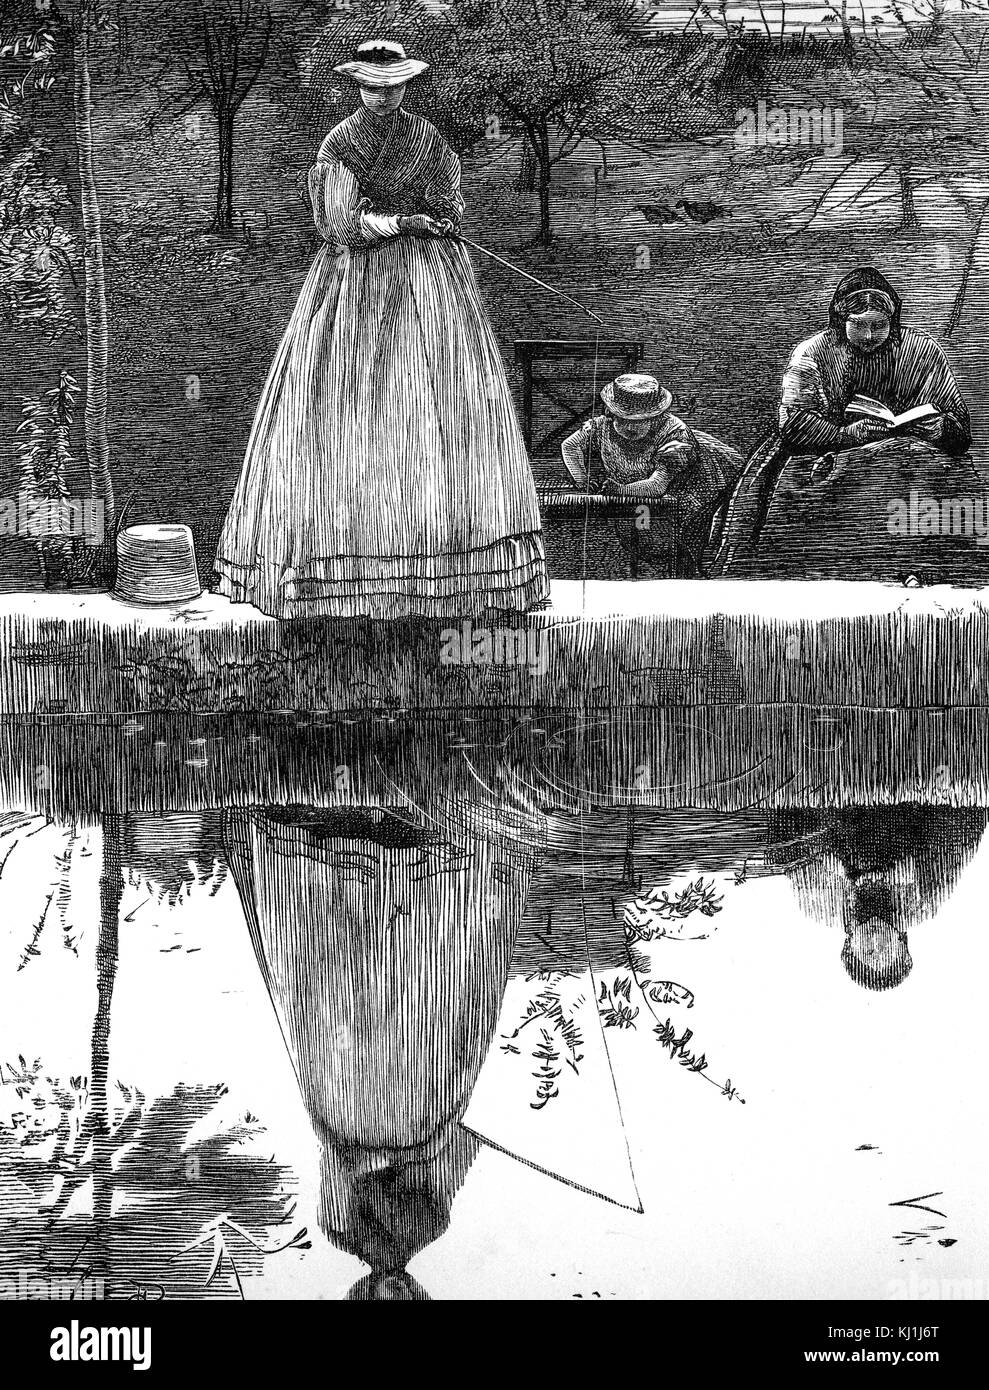 Abbildung: Darstellung einer Frau an ihr Spiegelbild im Wasser suchen, während Sie fischen. Mit Ill. von George John Pinwell (1842-1875) ein britischer Aquarell Maler. Vom 19. Jahrhundert Stockfoto